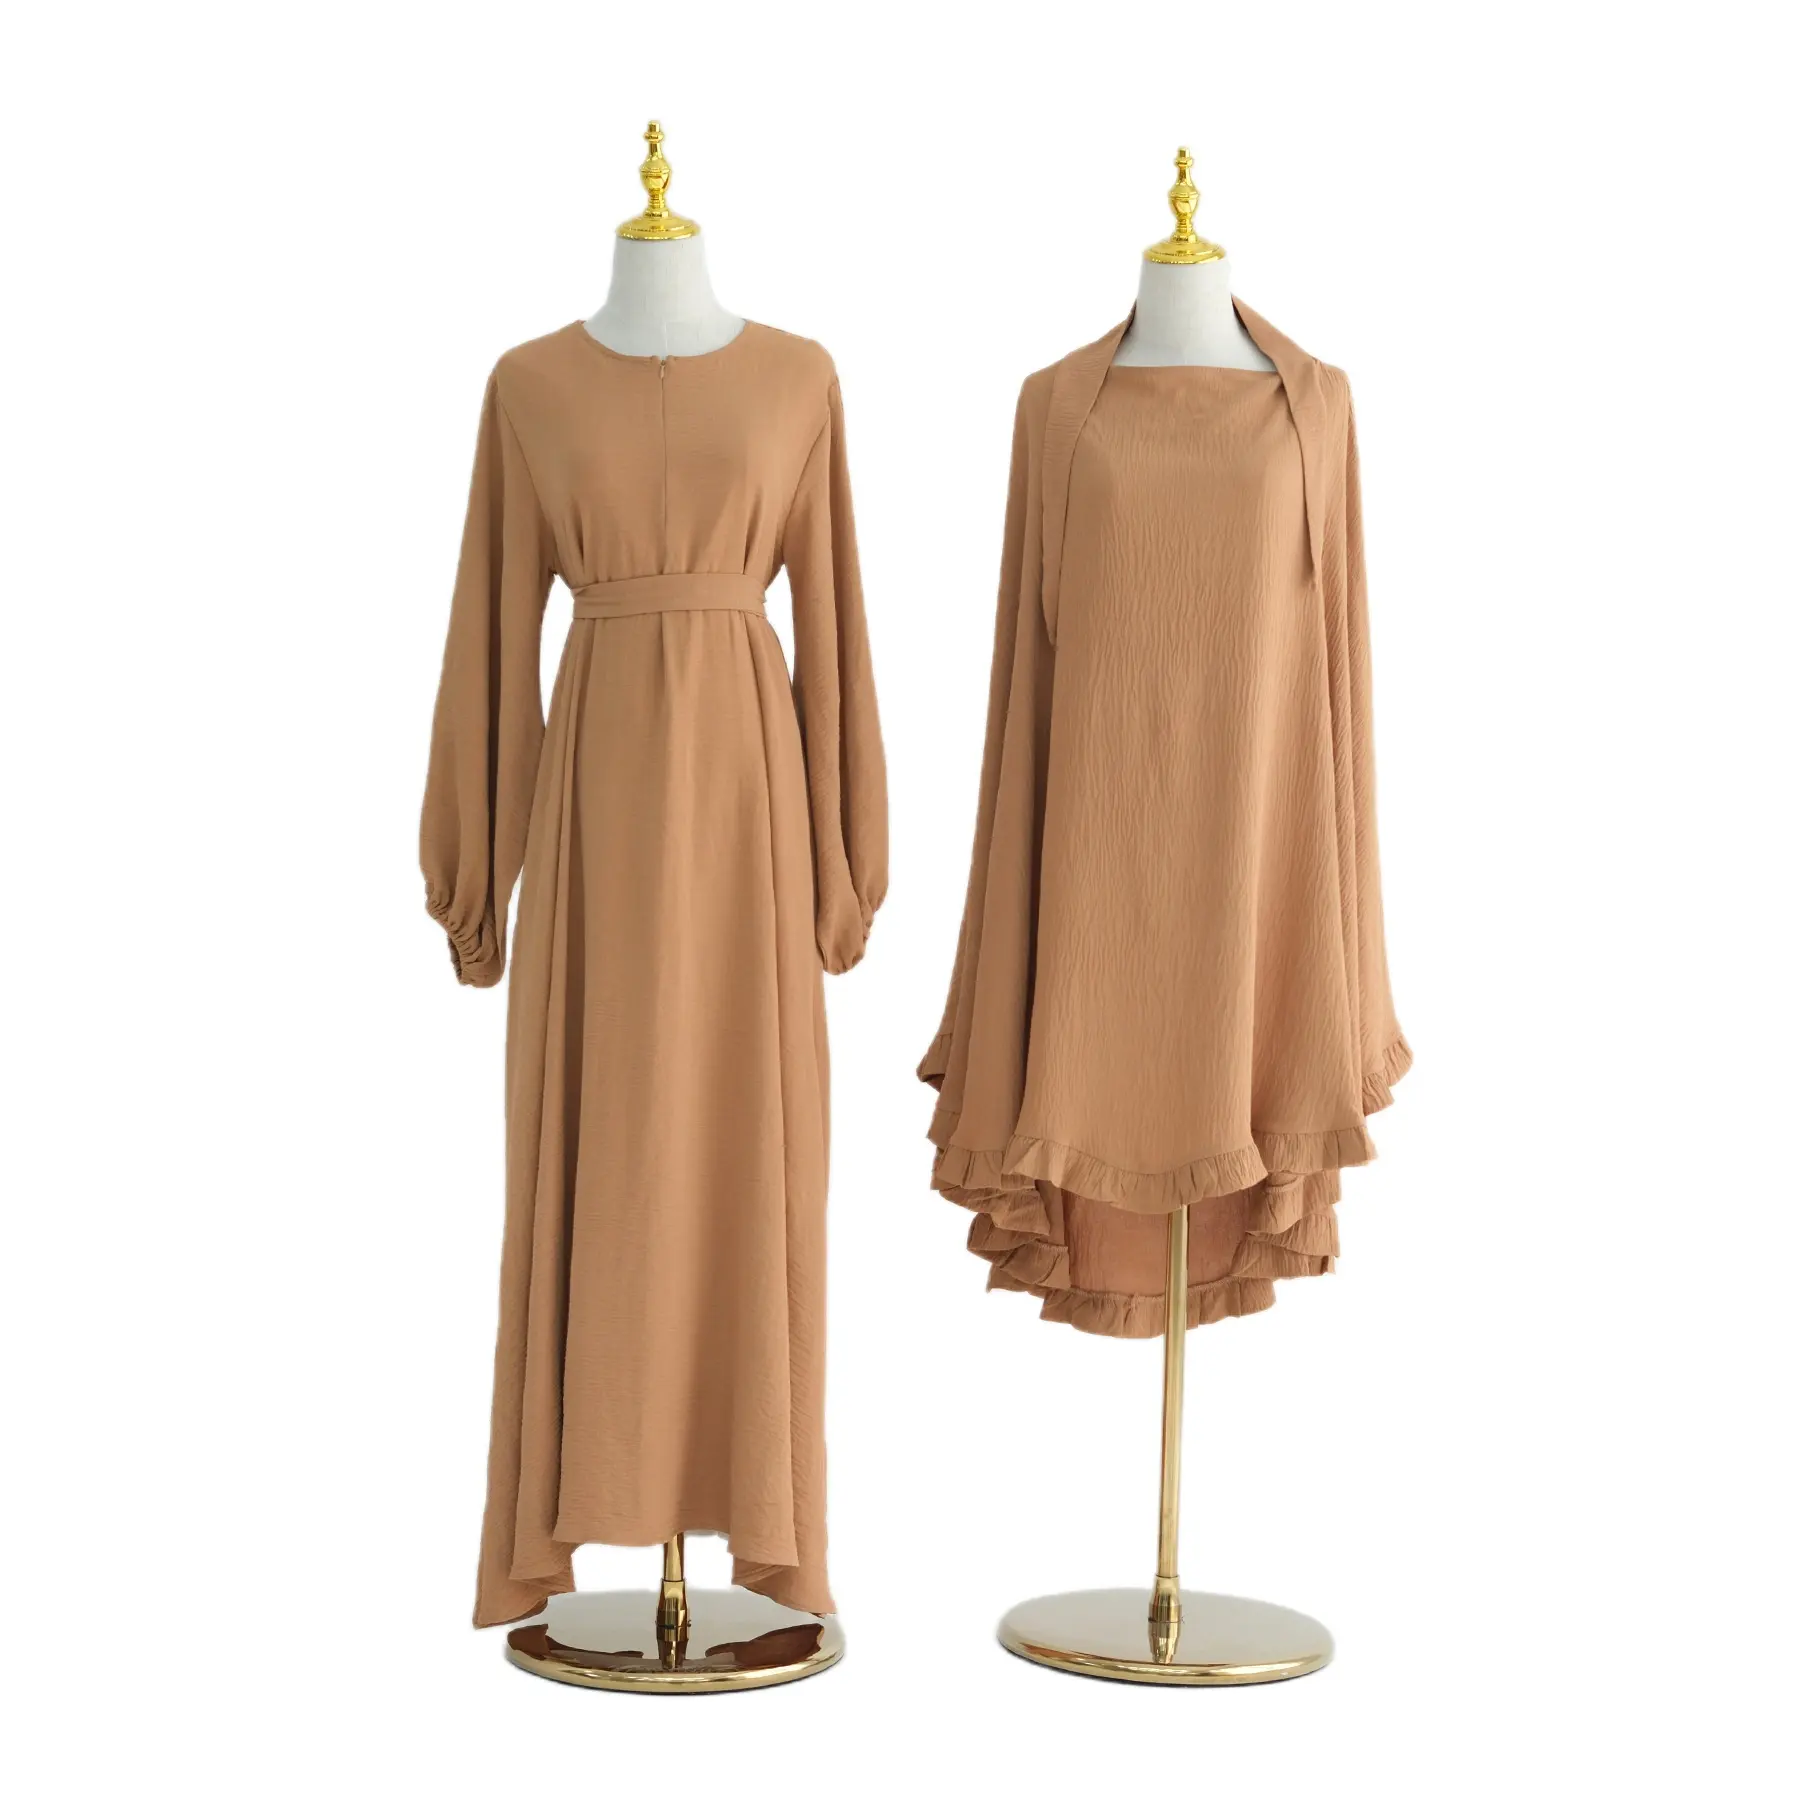 Großhandel solide Farbe Rüschen Jilbab Abaya muslimisches Kleid 2-teilig Abaya muslimischer Weiblicher Jilbab mit Tasche